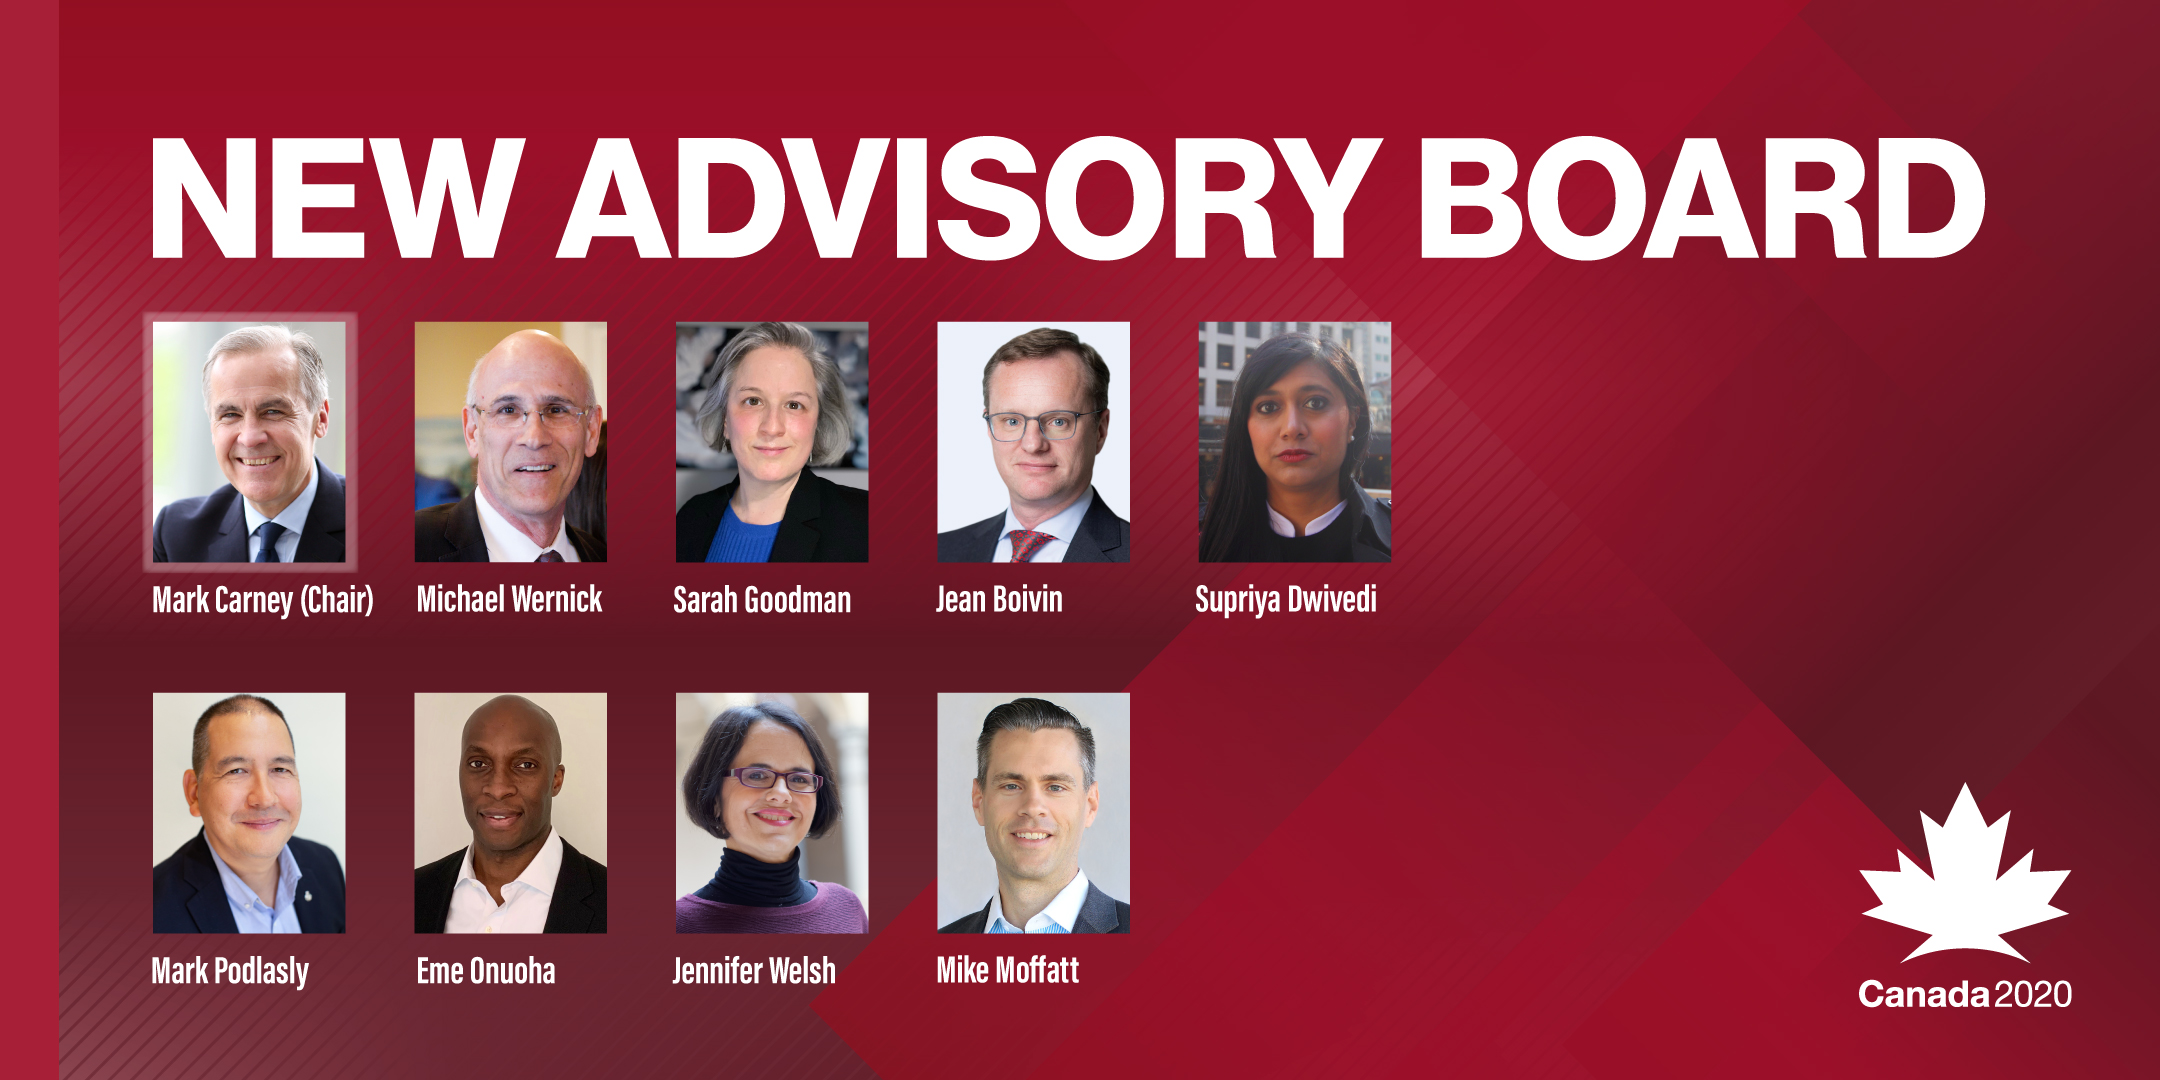 Canada 2020 announces new Advisory Board